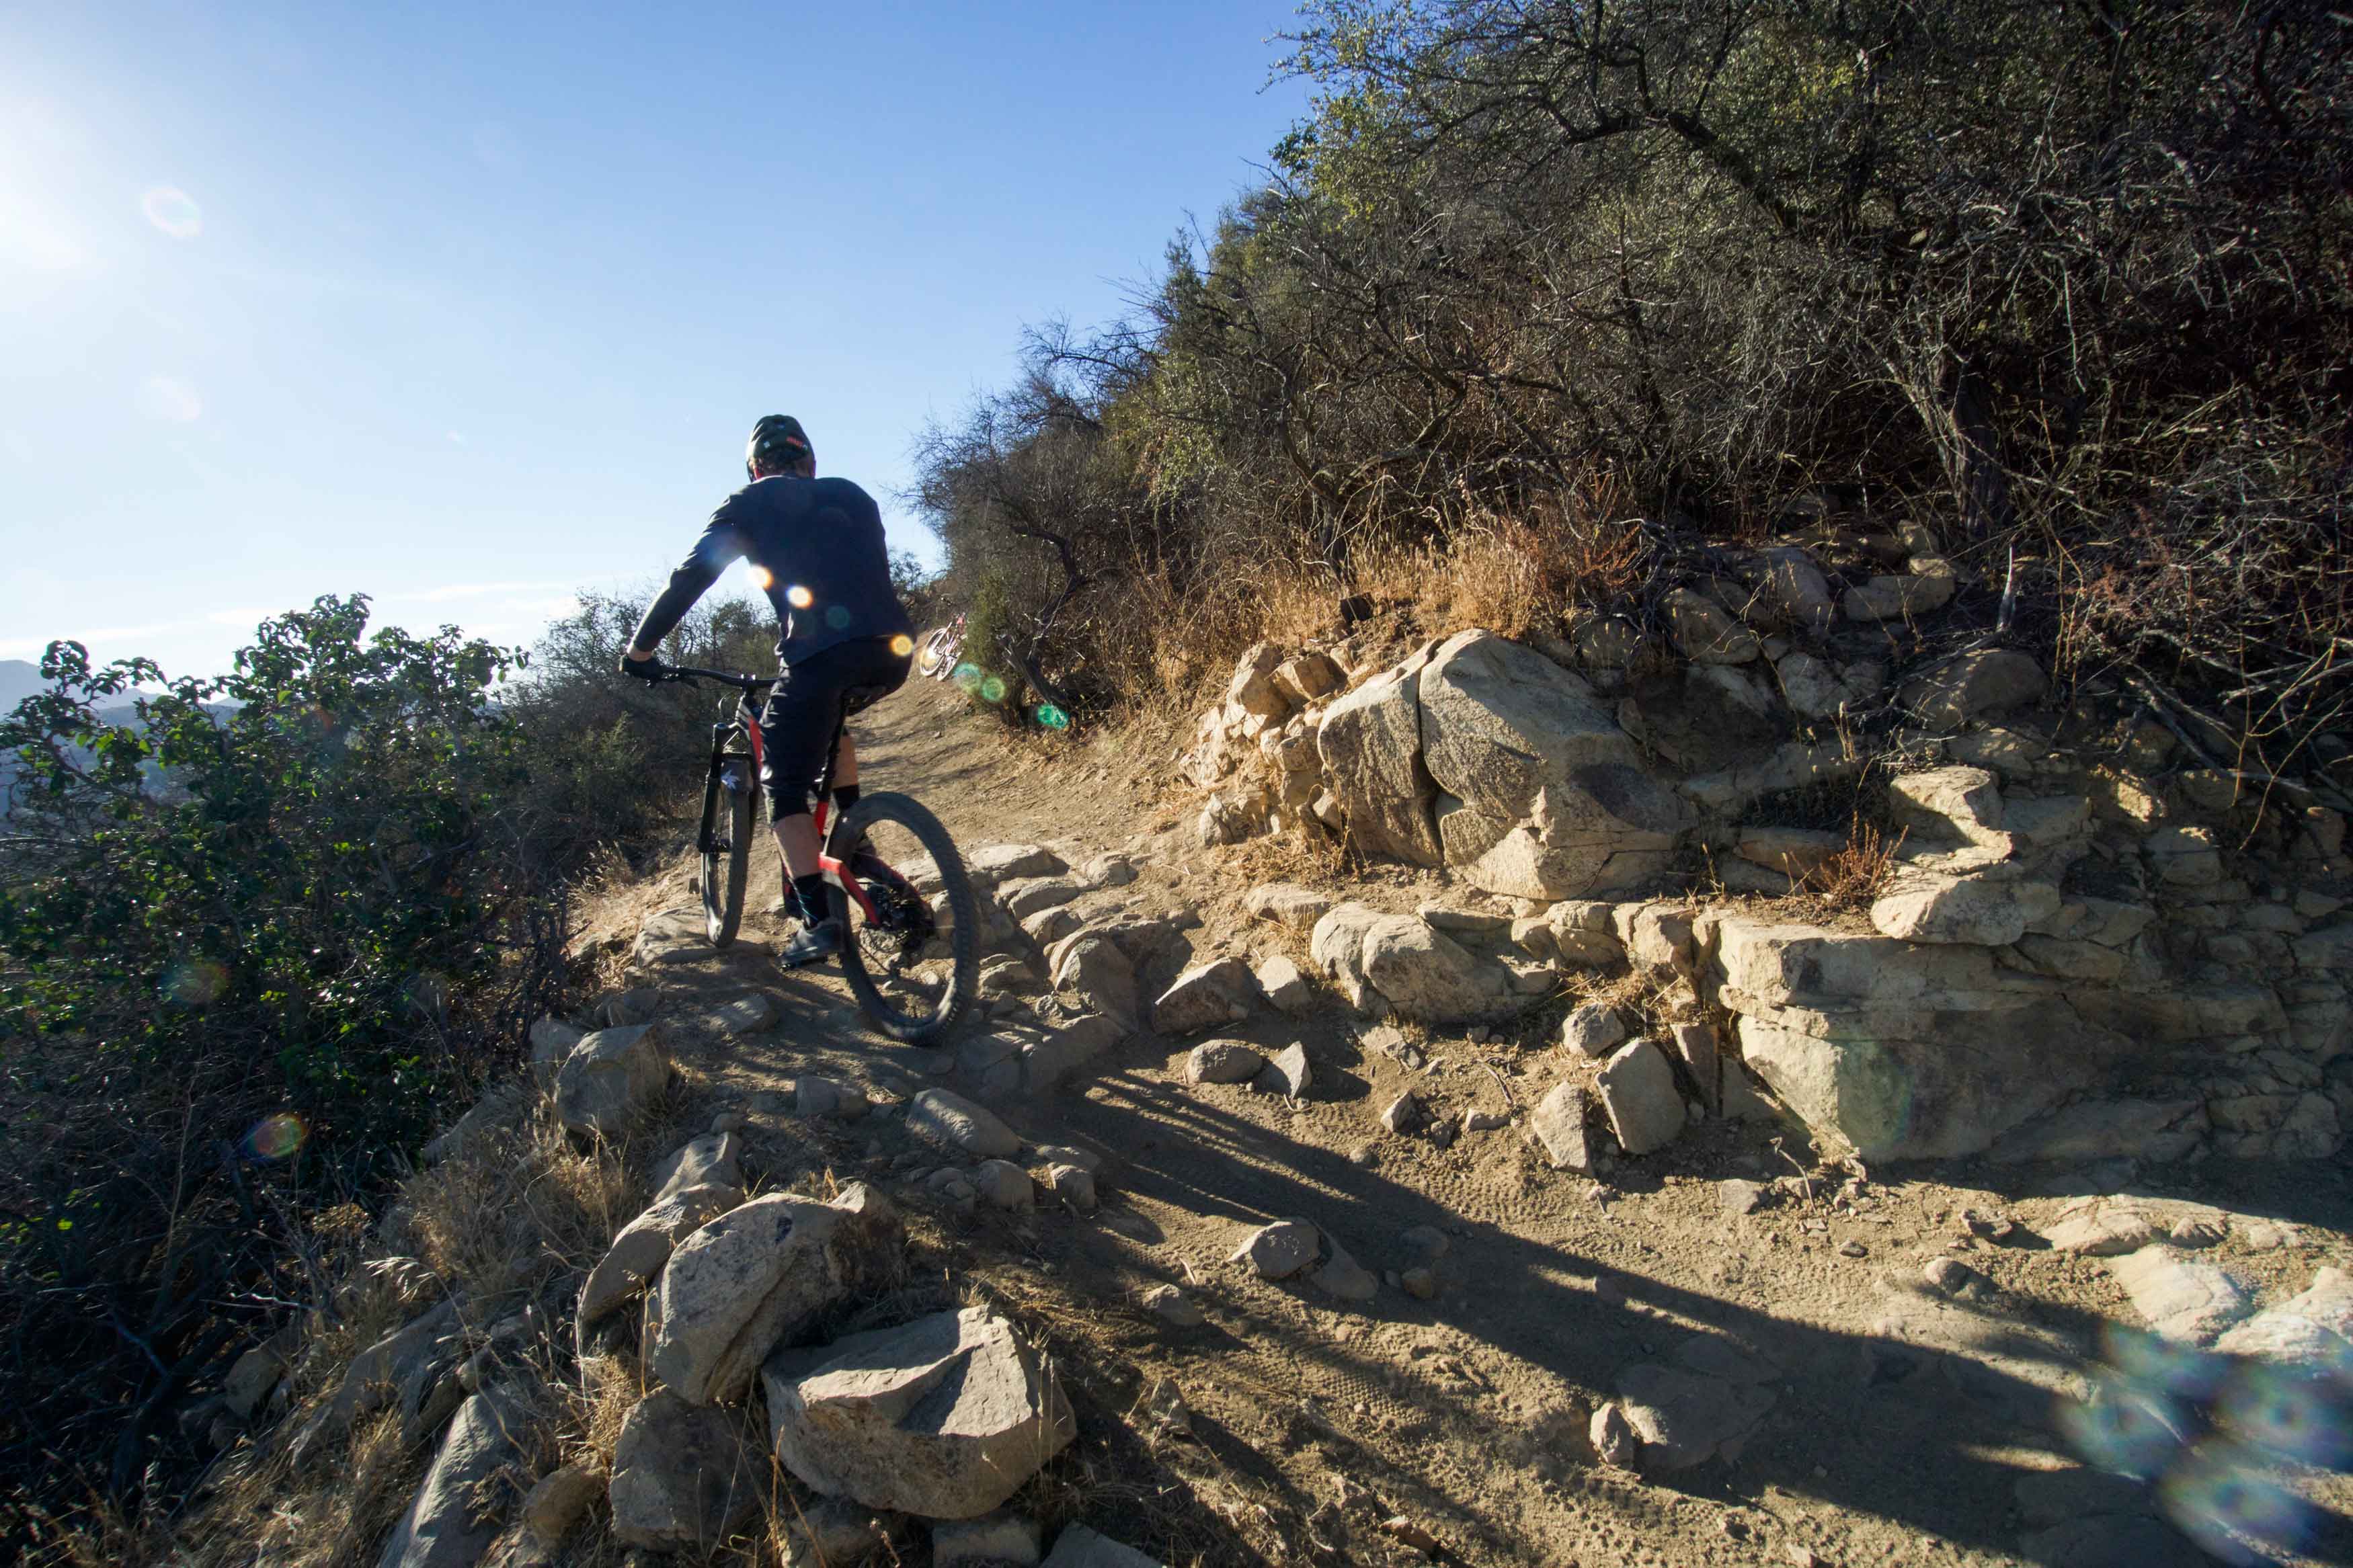 Best mountain bike trails in Los Angeles